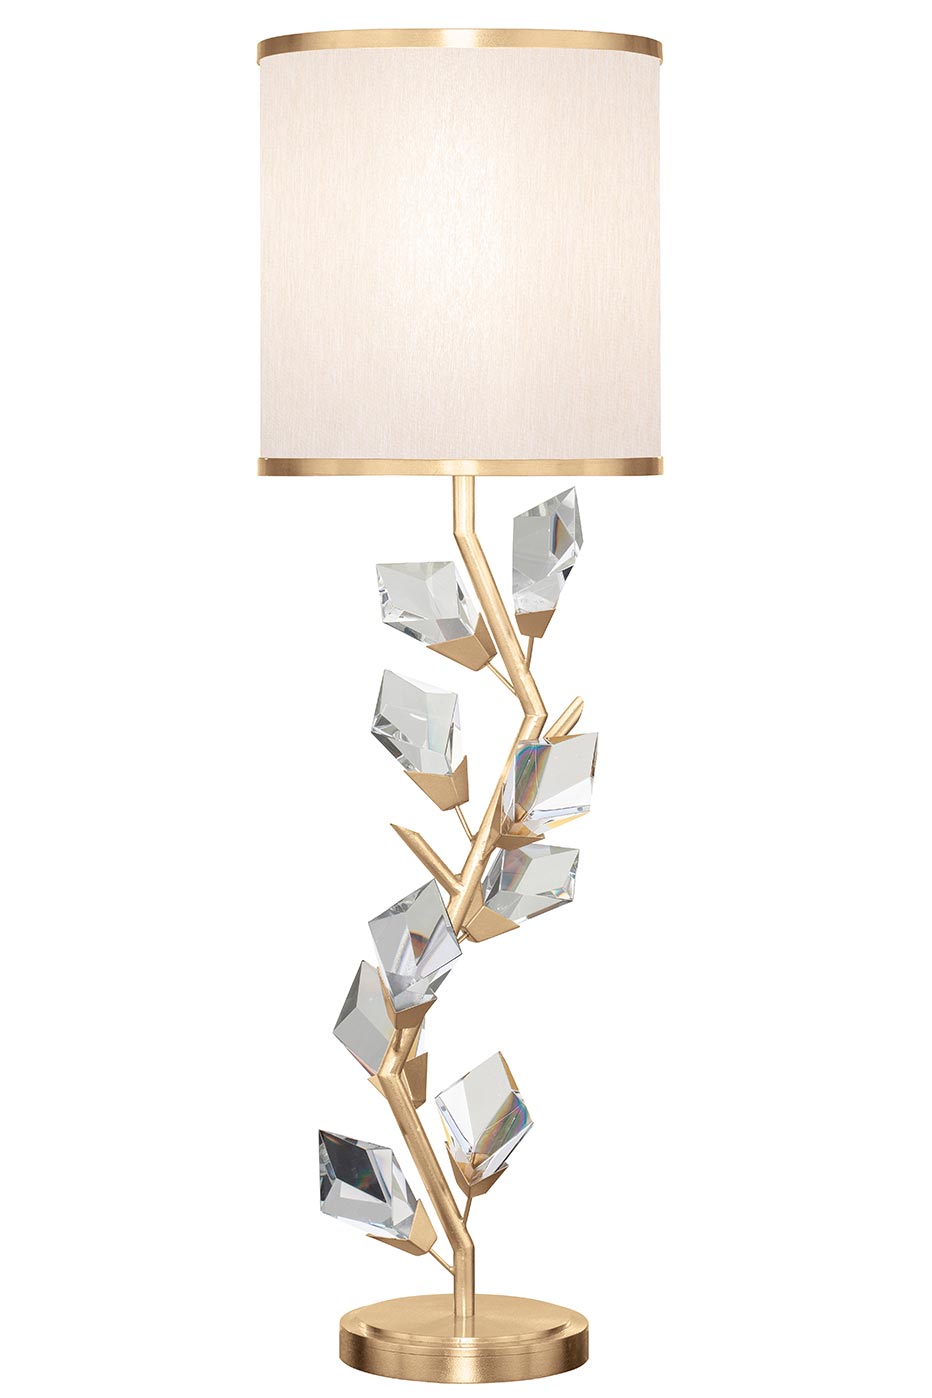 Fine Art Lamps Luxury Lighting Fixtures, Fine Art Table Lamps